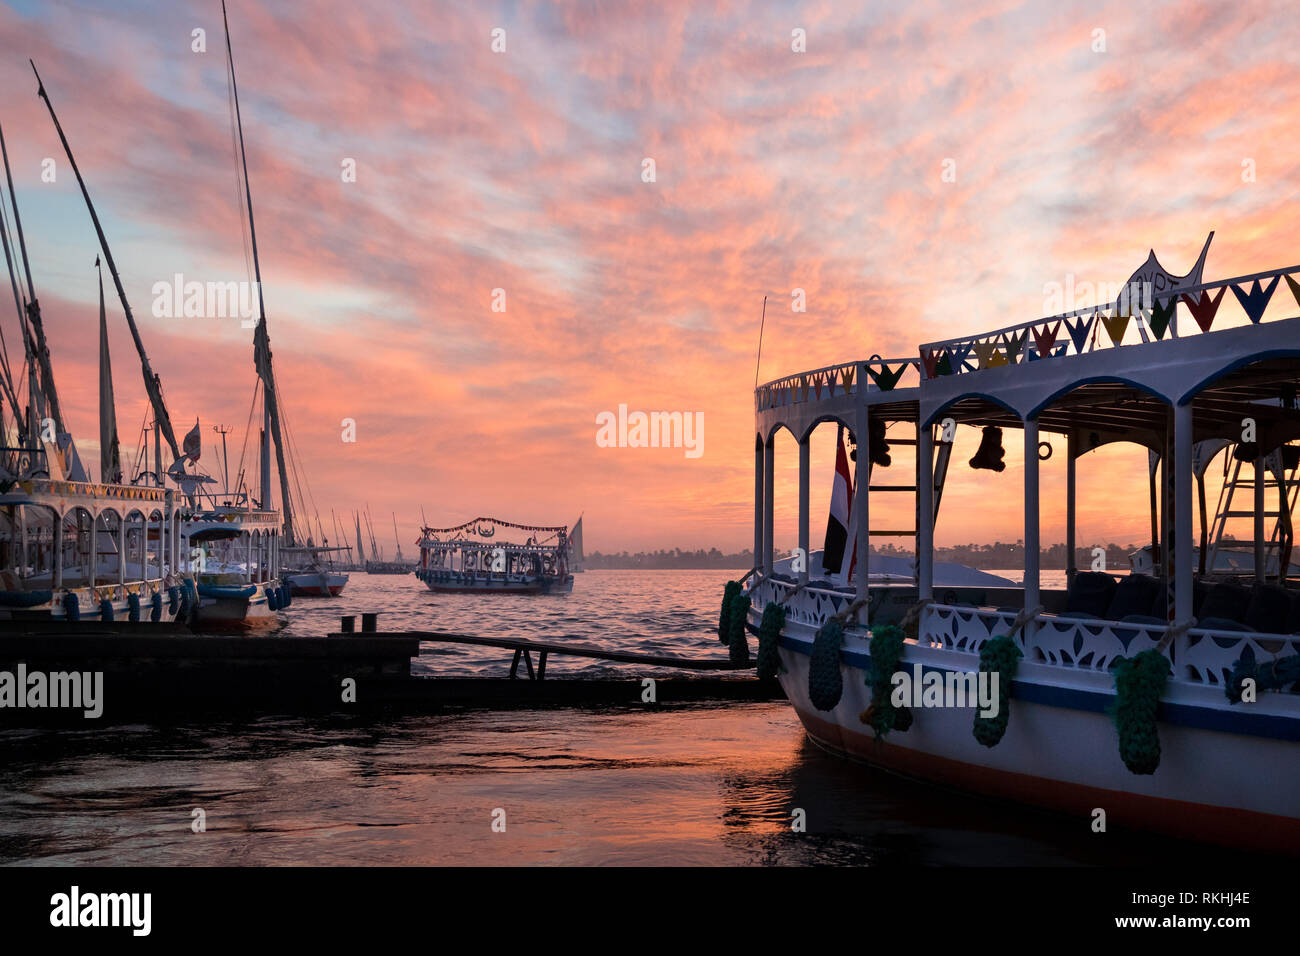 Différents bateaux au Nil à Louxor, Égypte, avec un beau coucher de soleil rose ciel dans l'arrière-plan Banque D'Images